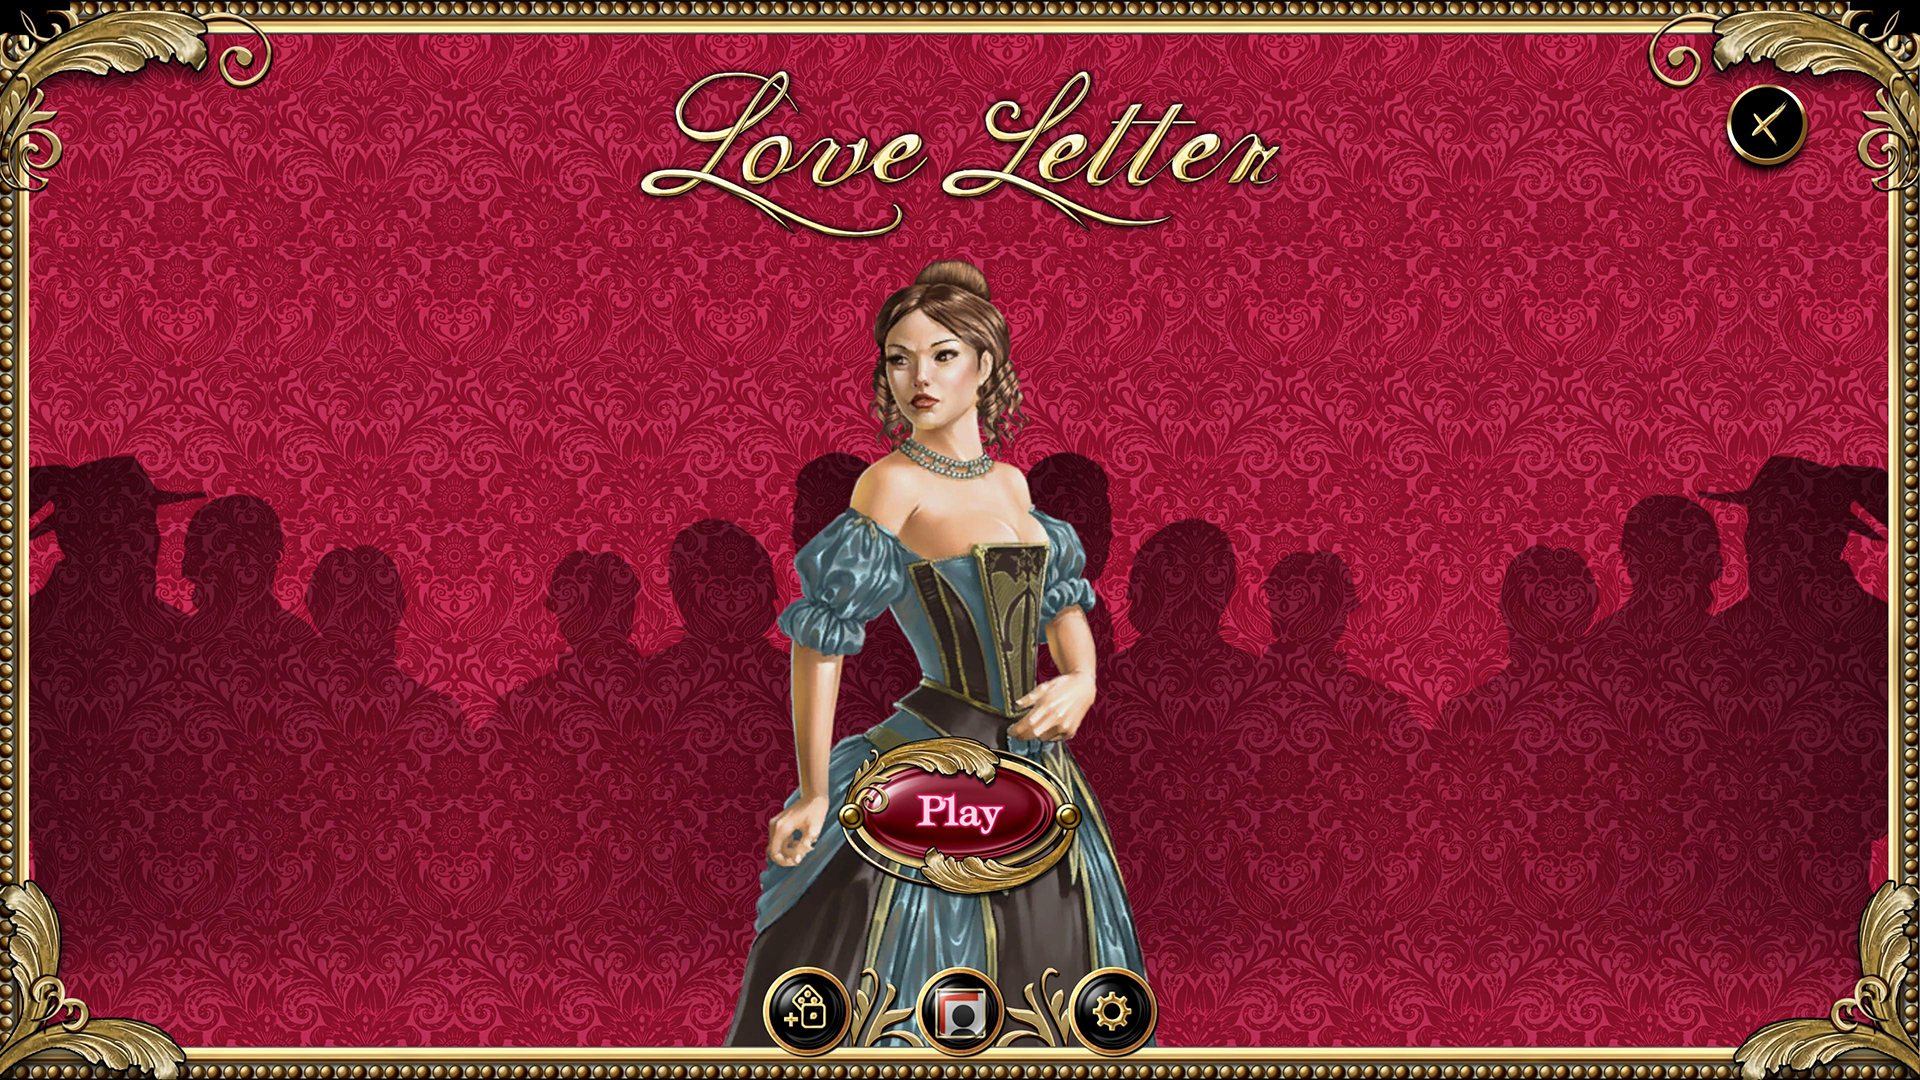 Love Letter Steam CD Key, $0.26